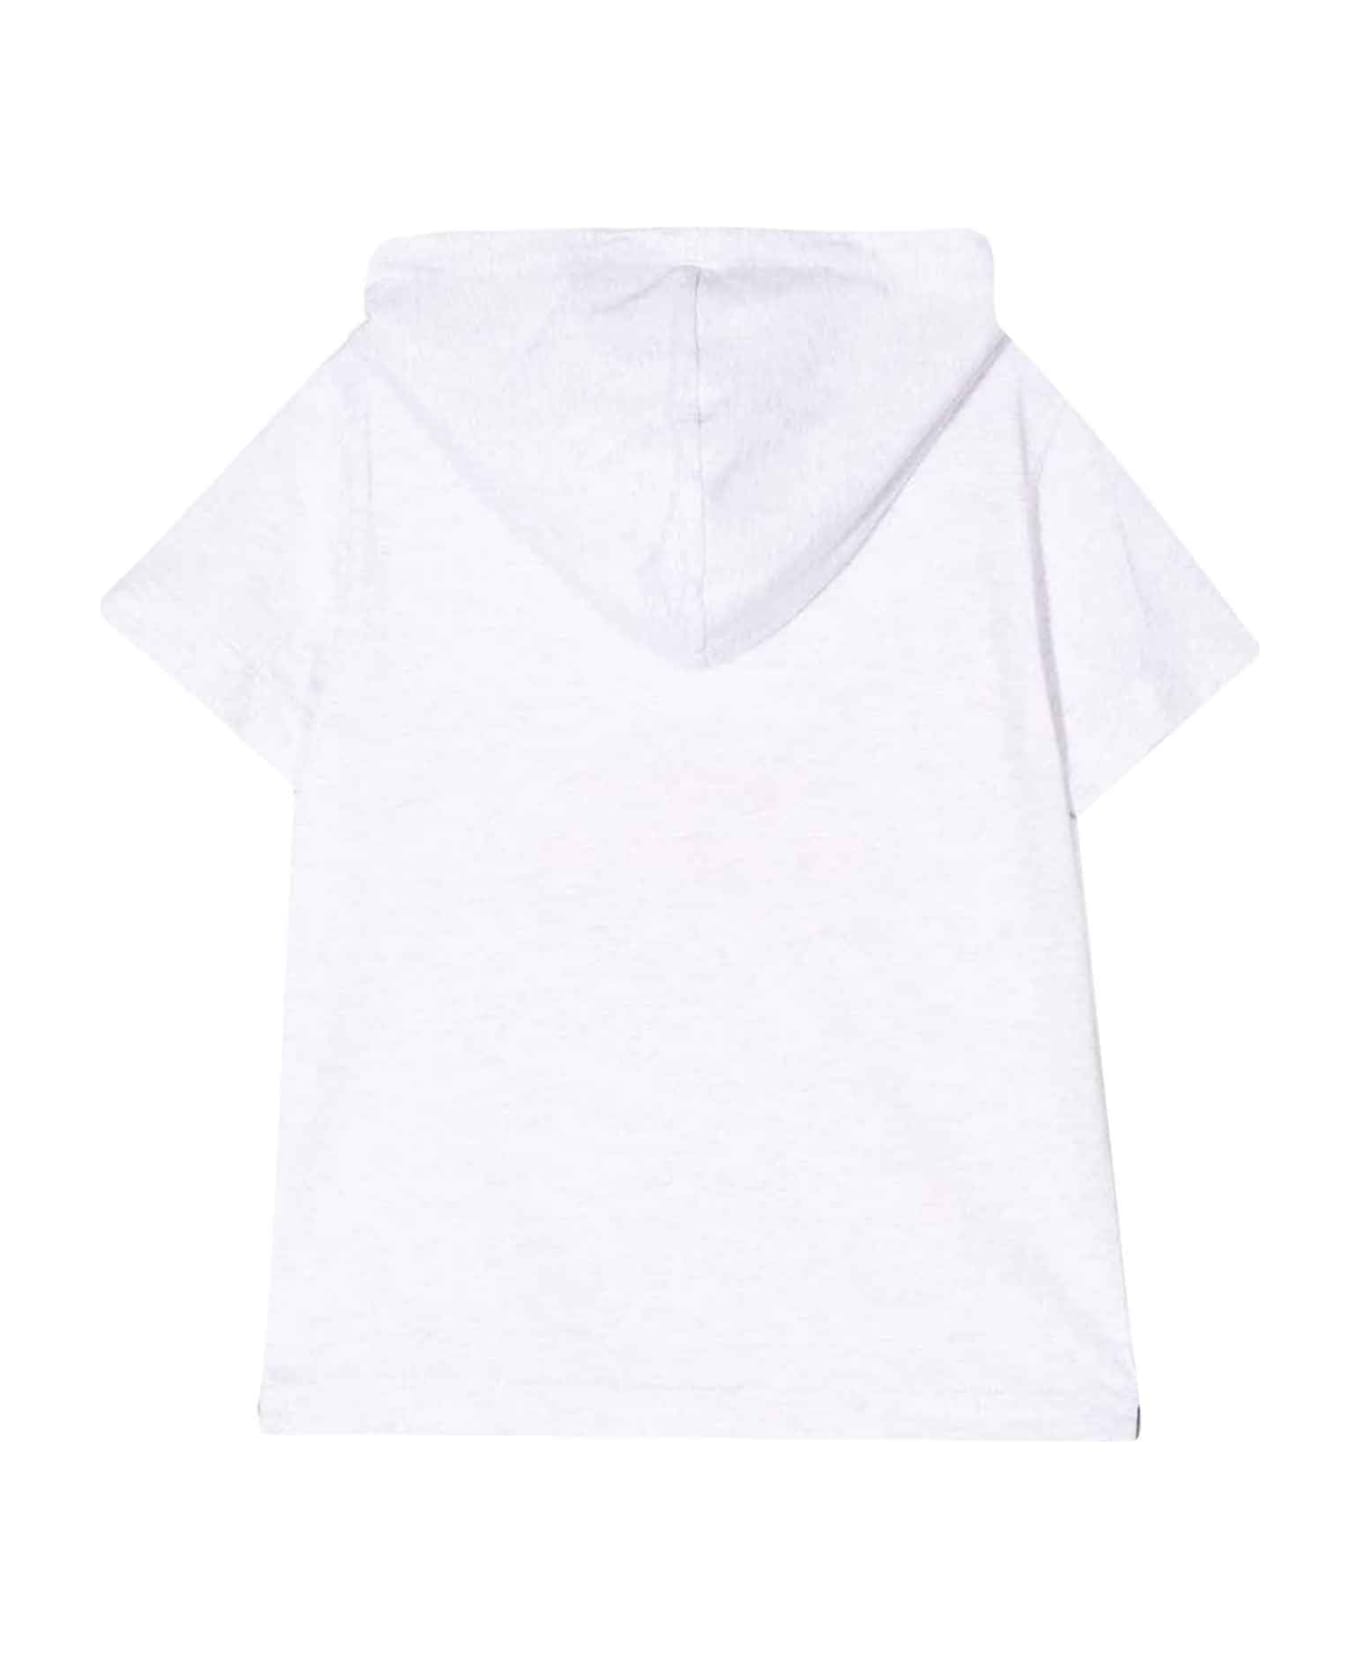 Brunello Cucinelli White T-shirt Teen Boy - Bianco